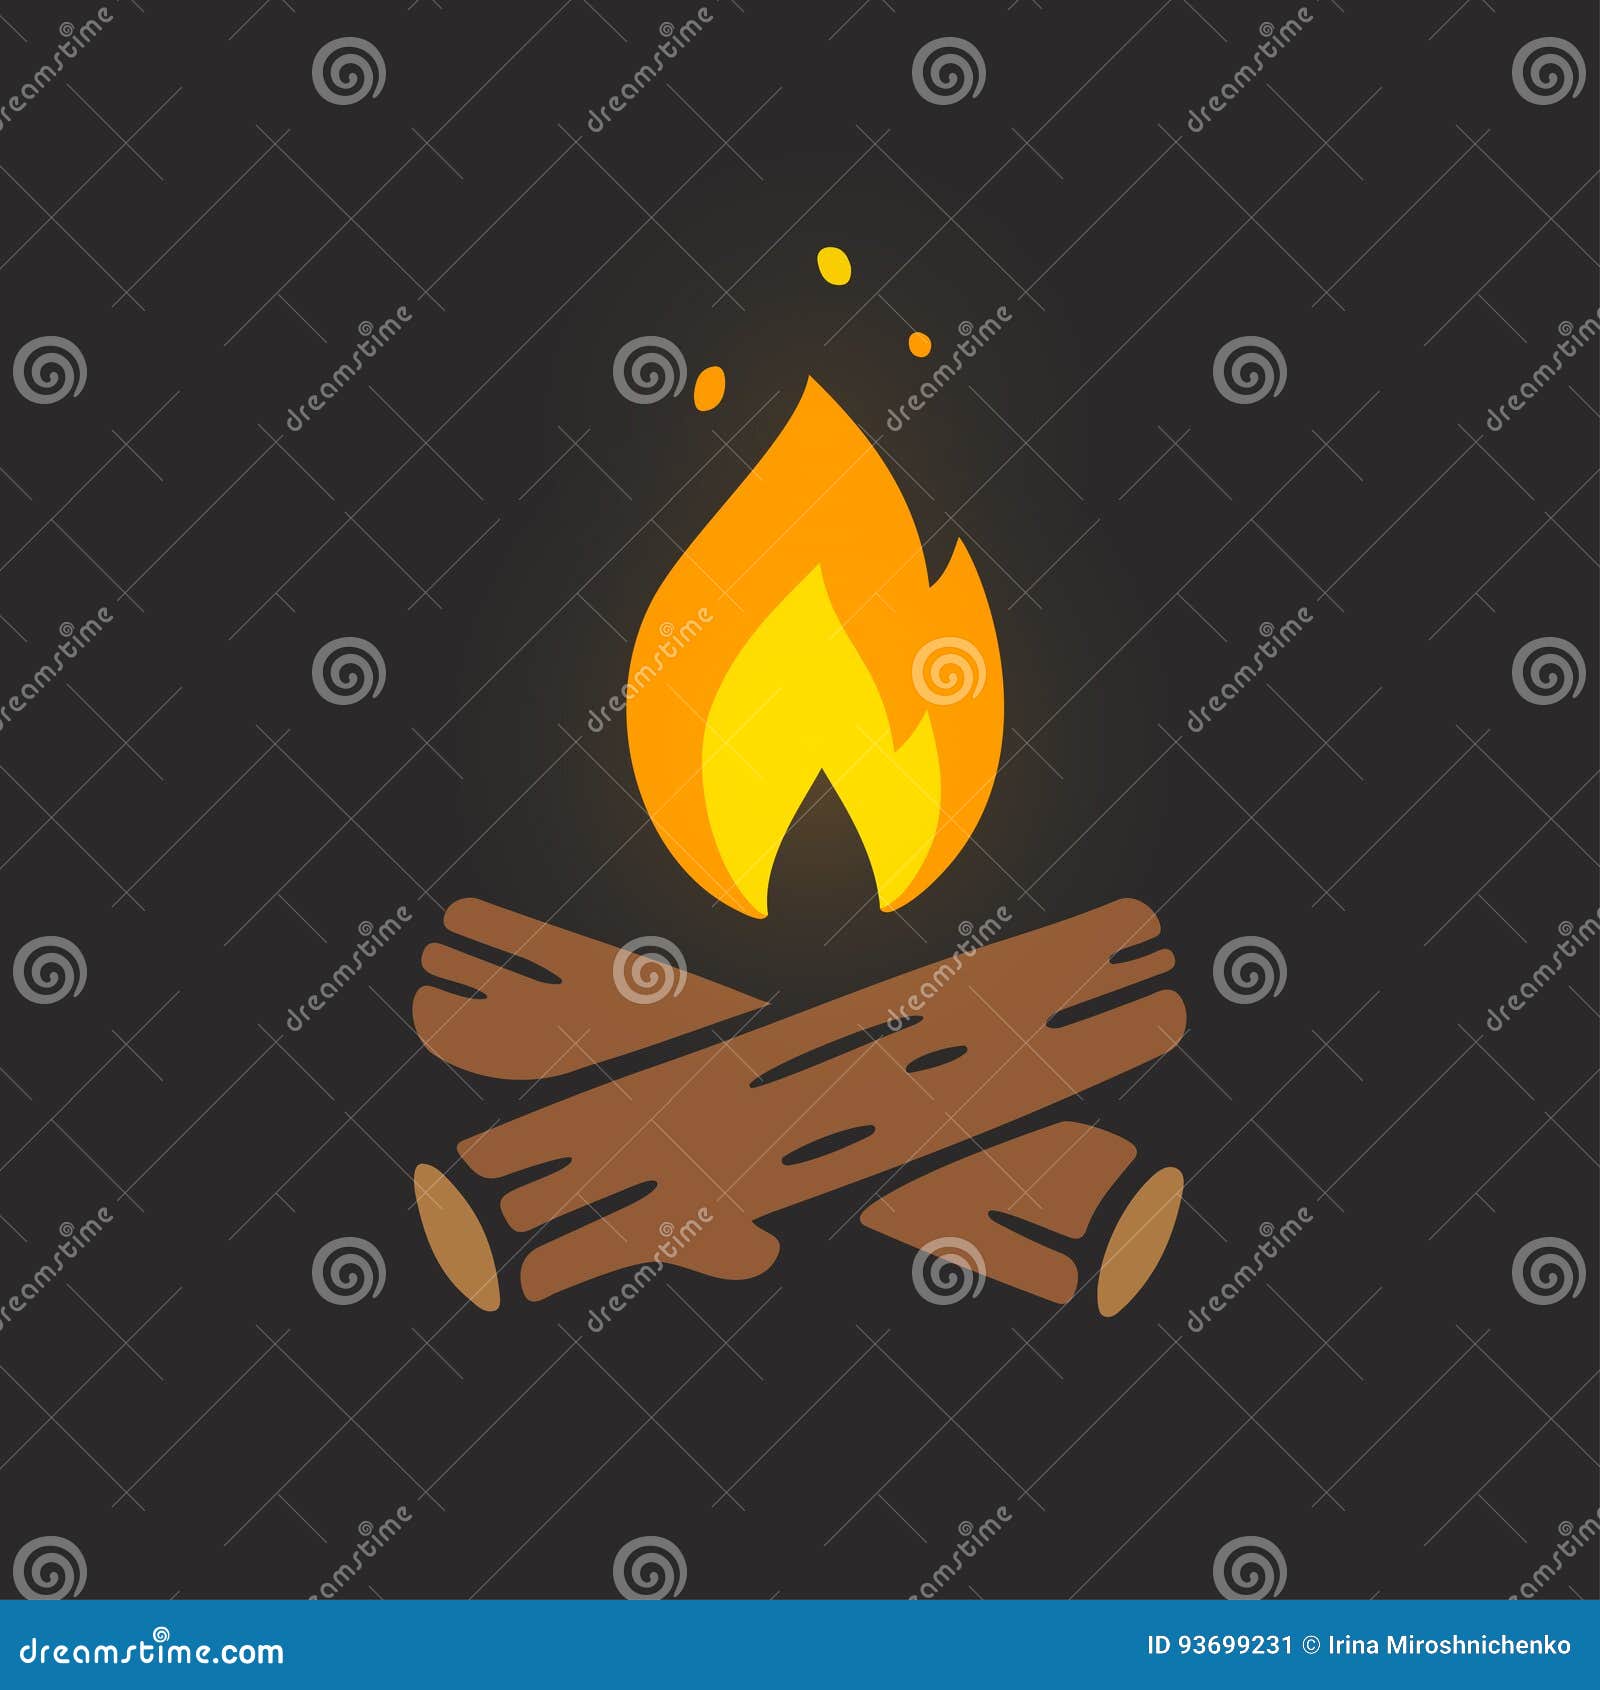 Campfire Logo Illustrations & Vectors